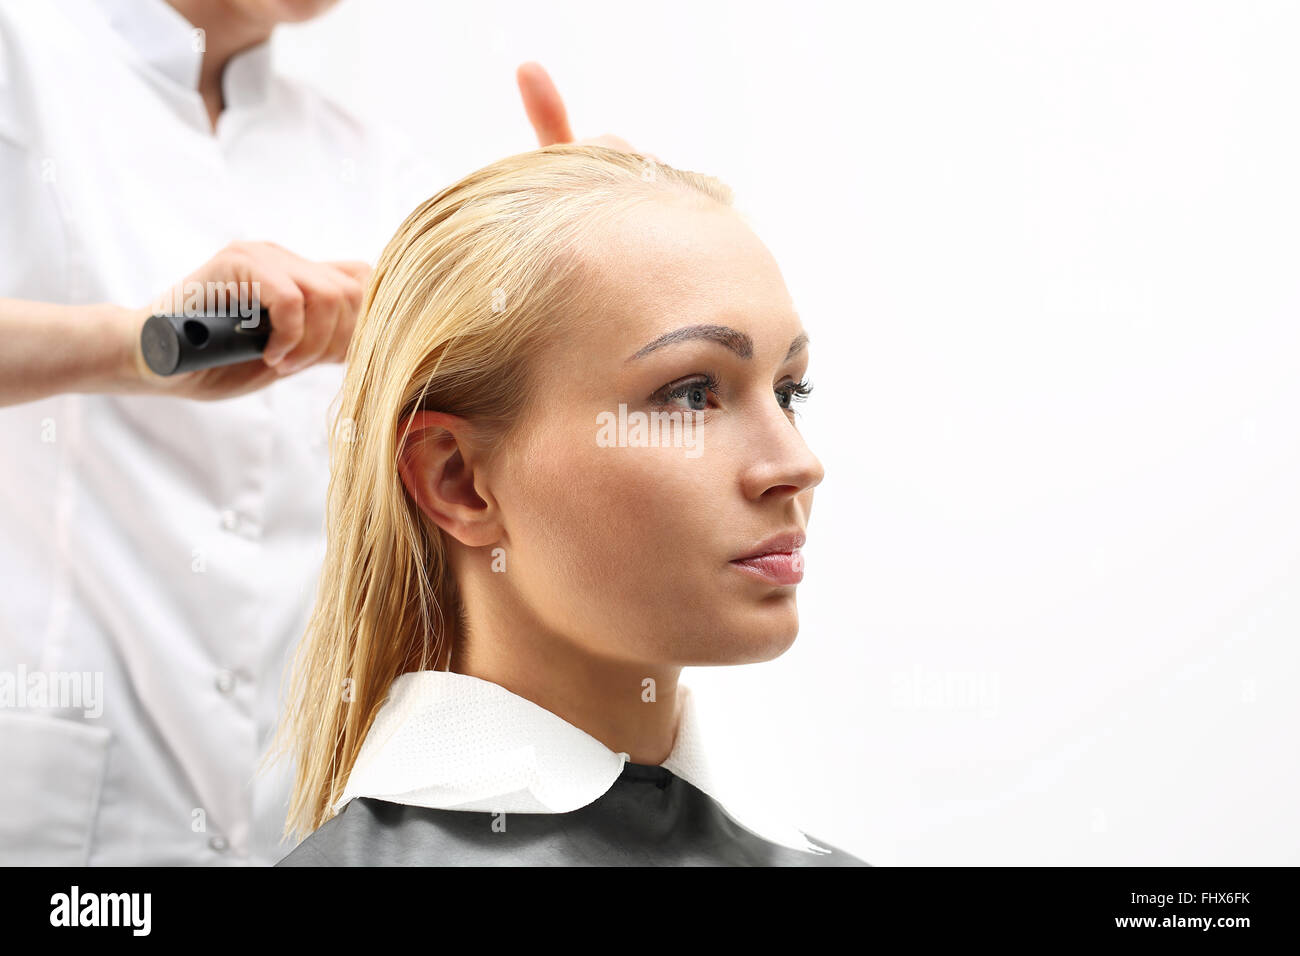 Di media lunghezza capelli, la donna presso il parrucchiere. La pettinatura dei capelli. La donna in sedia barbiere styling durante la chirurgia Foto Stock